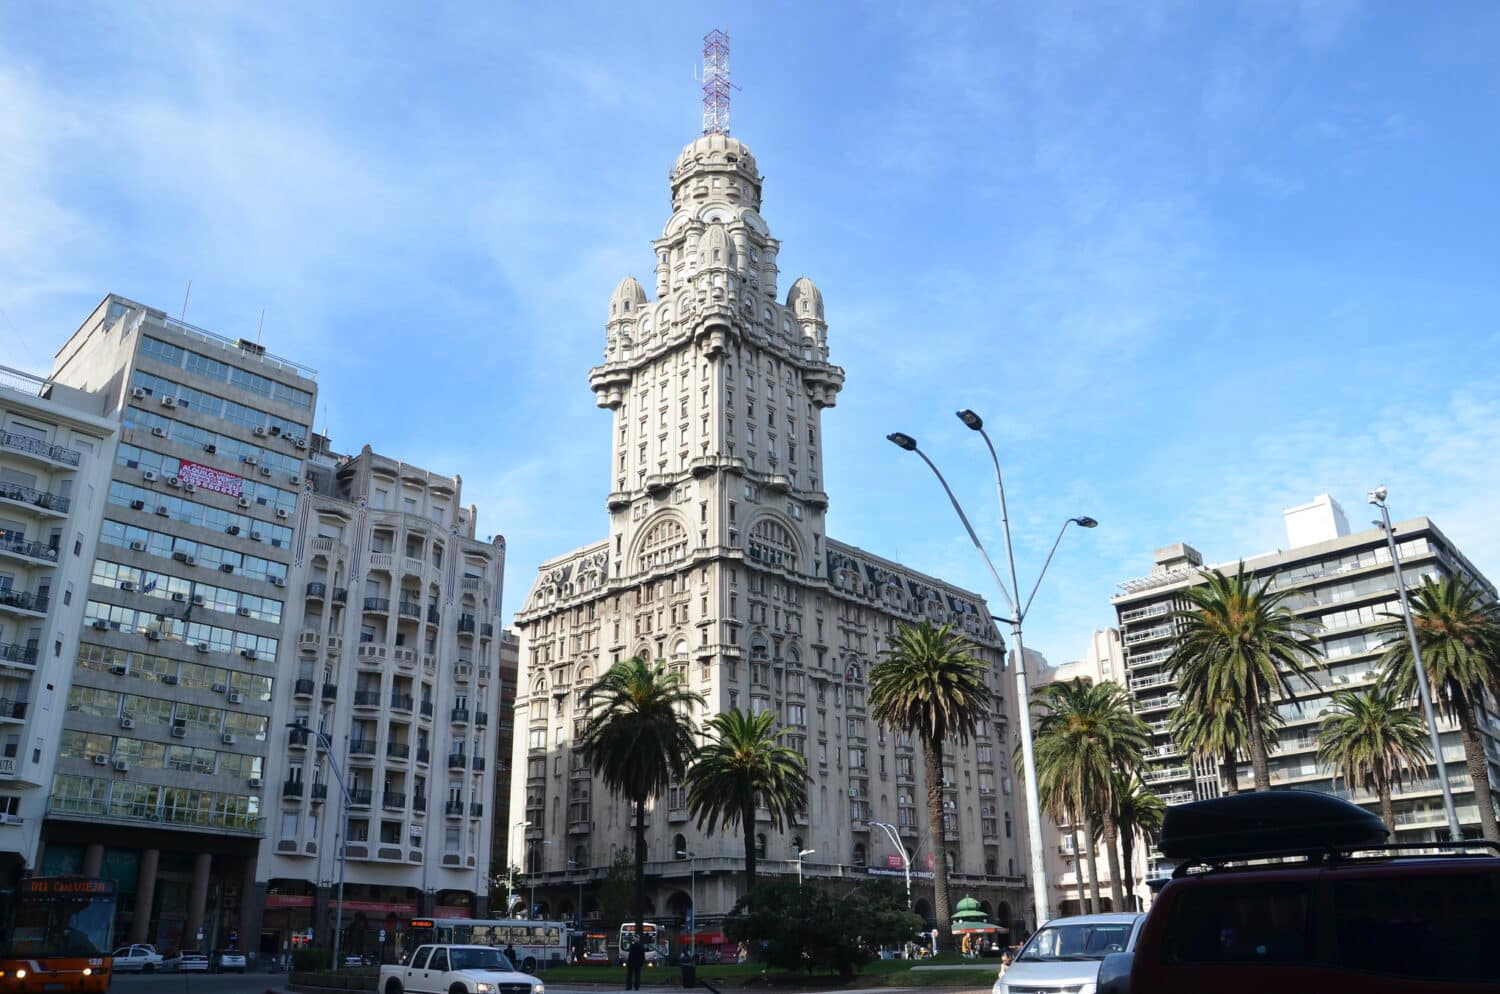 Palácio Salvo em Montevidéu, uma construção antiga e imponenete no centro da cidade, com uma torre central muito alta, ao redor, é possível ver prédios comerciais mais atuais e algumas árvores